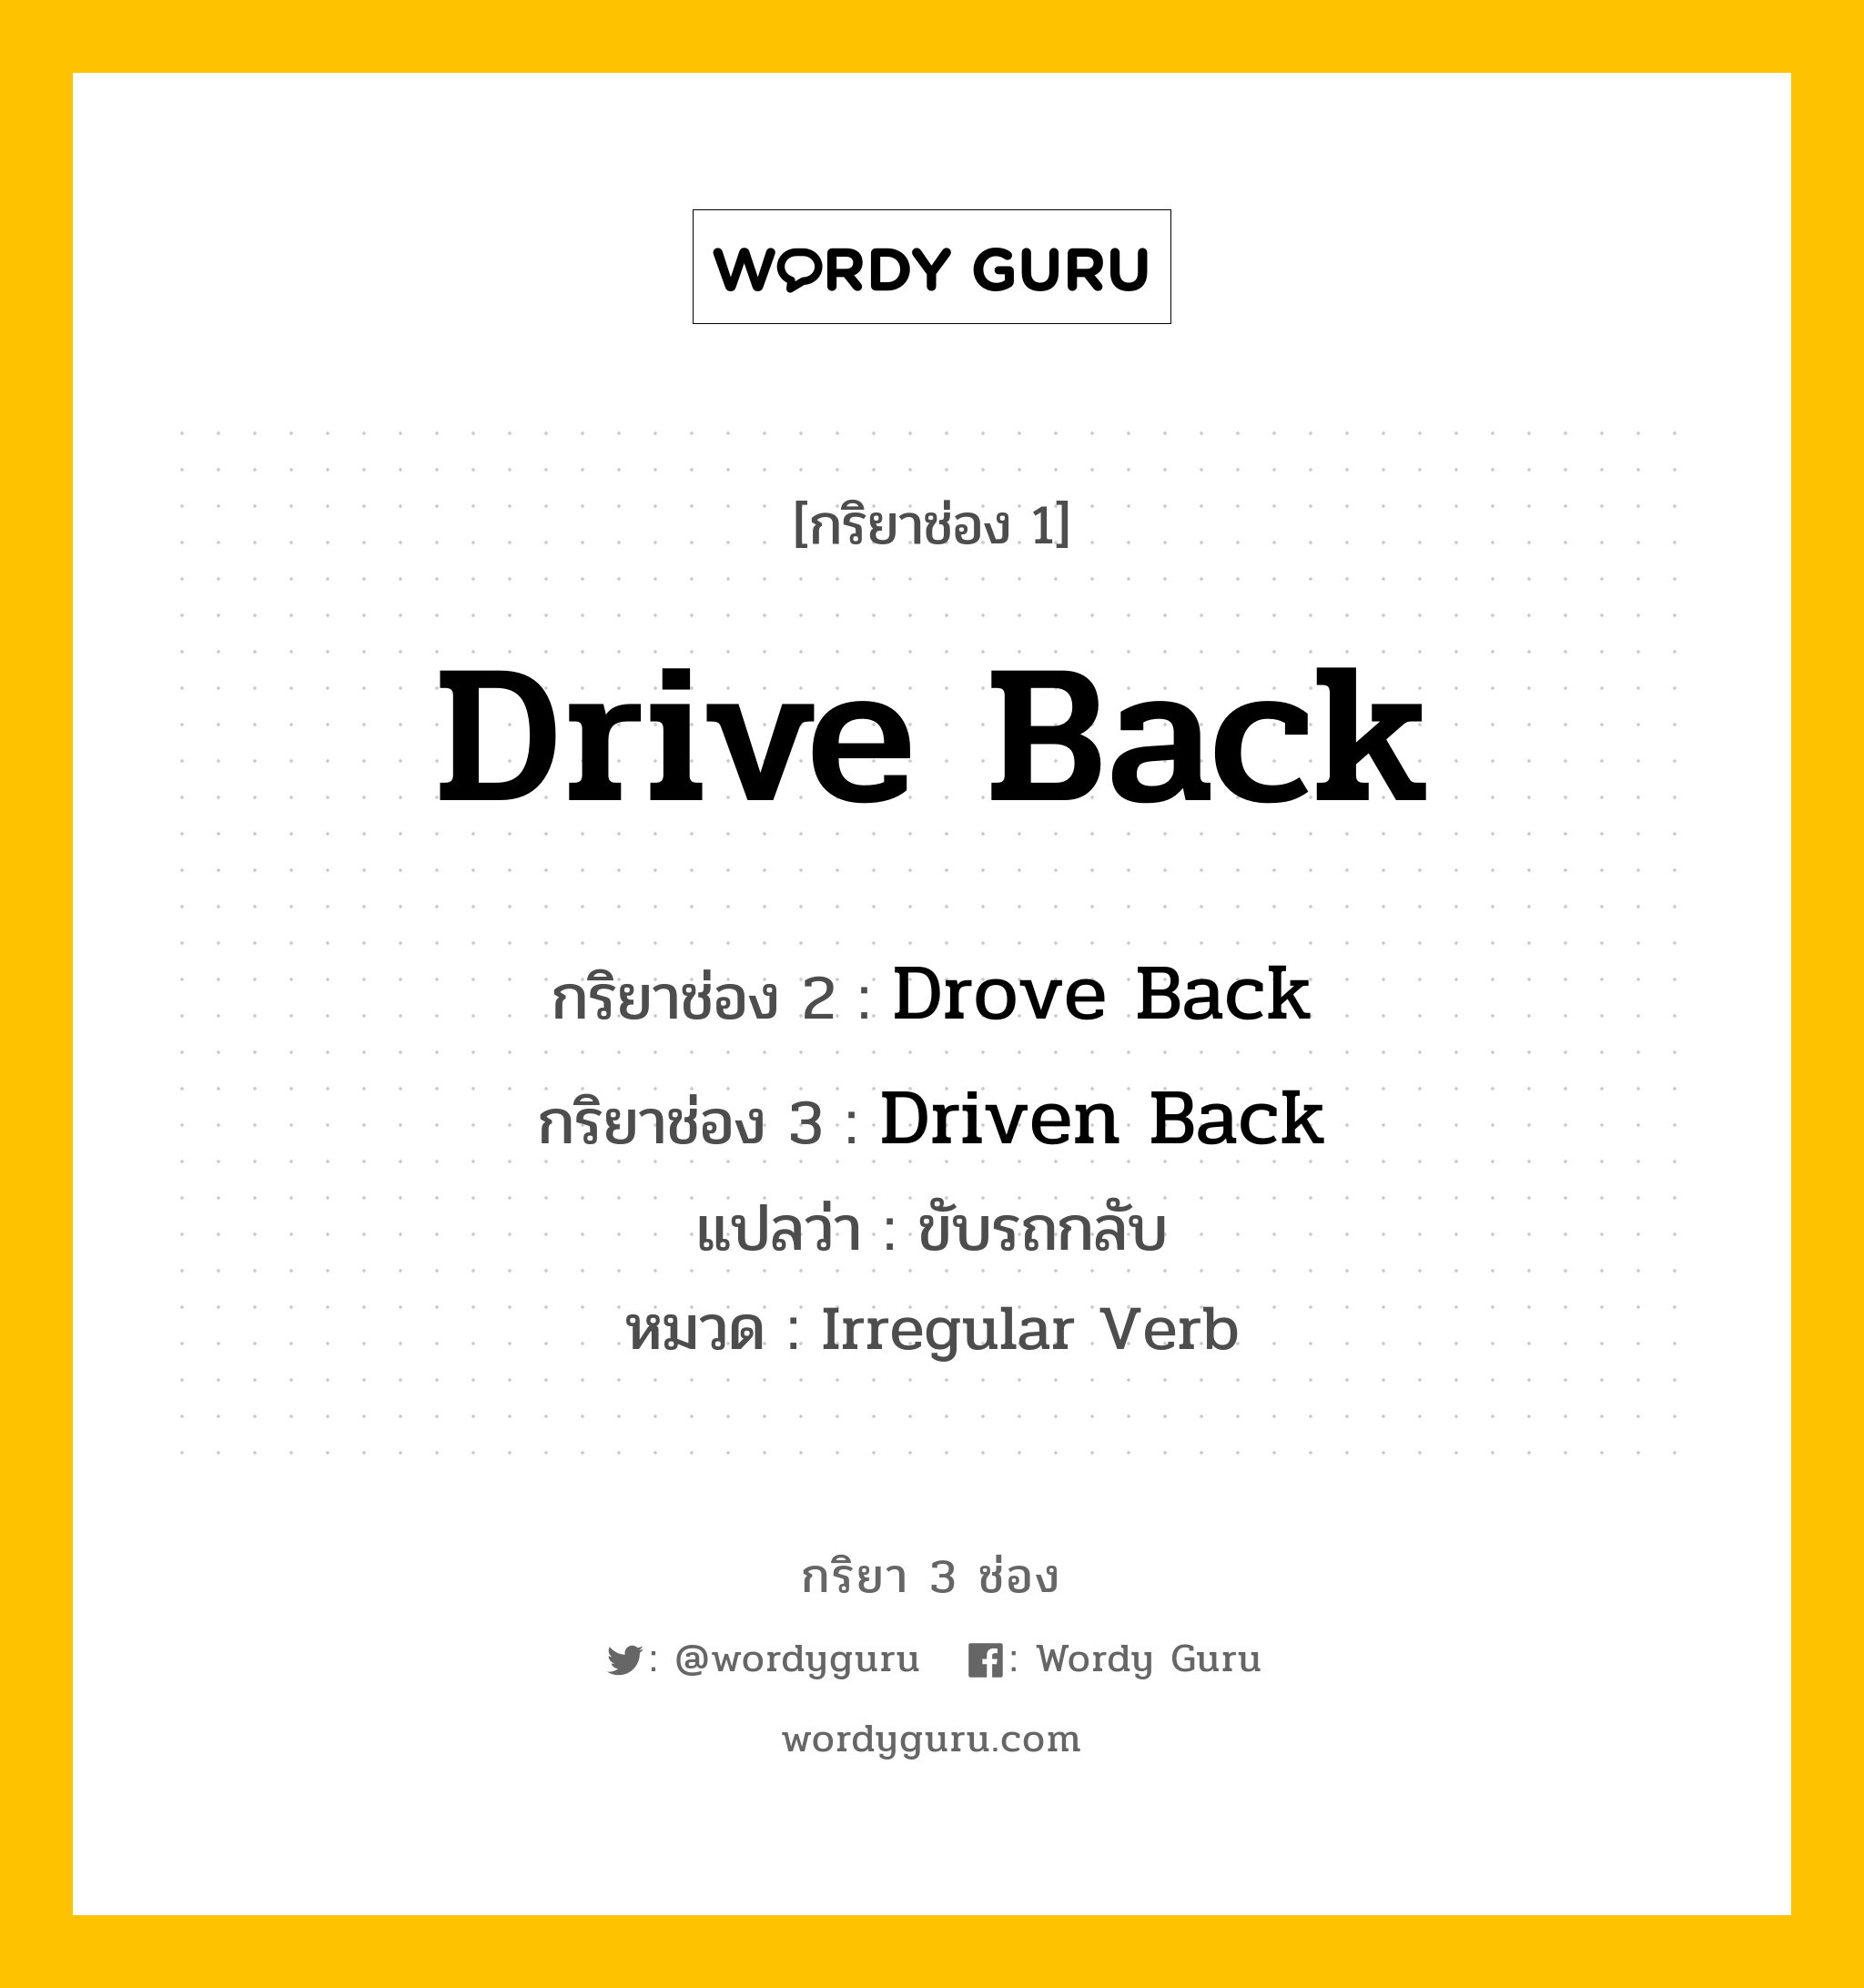 กริยา 3 ช่อง: Drive Back ช่อง 2 Drive Back ช่อง 3 คืออะไร, กริยาช่อง 1 Drive Back กริยาช่อง 2 Drove Back กริยาช่อง 3 Driven Back แปลว่า ขับรถกลับ หมวด Irregular Verb หมวด Irregular Verb